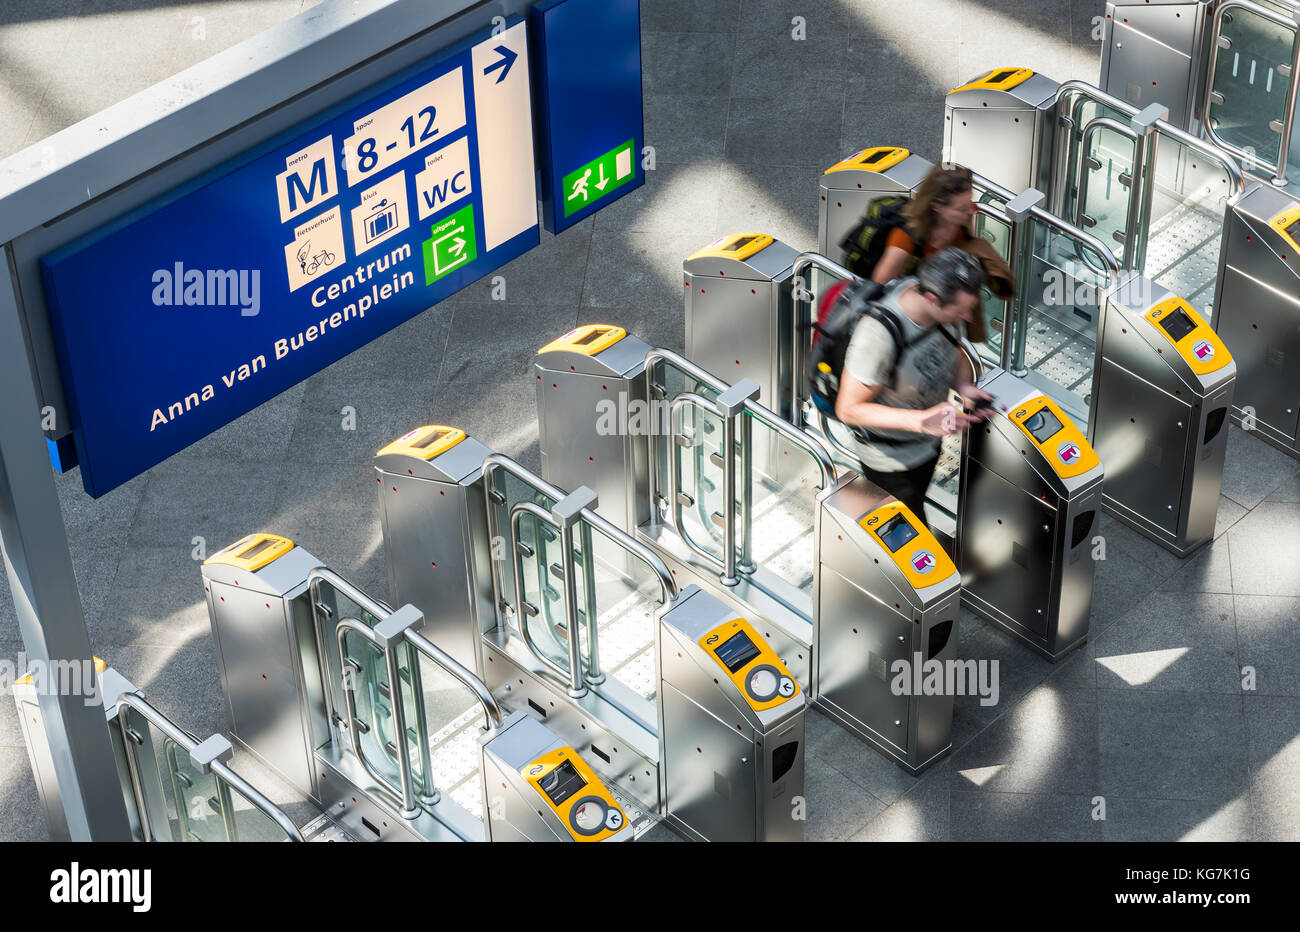 Den Haag, Niederlande - 6 August, 2017: die Menschen am Hauptbahnhof Den Haag auf ov check points. Stockfoto